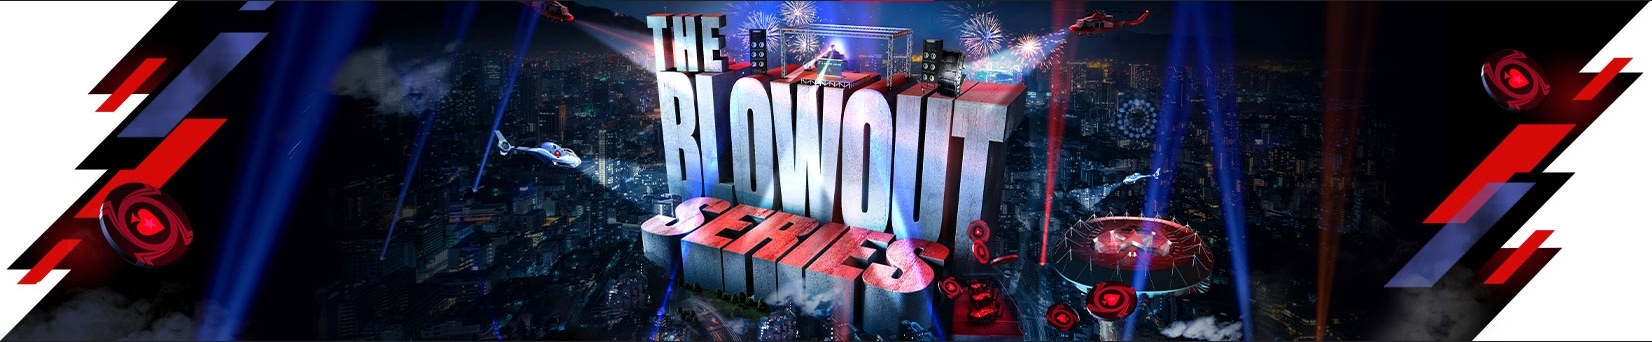 Серия Blowout: 60M$ гарантии в конце декабря на PokerStars